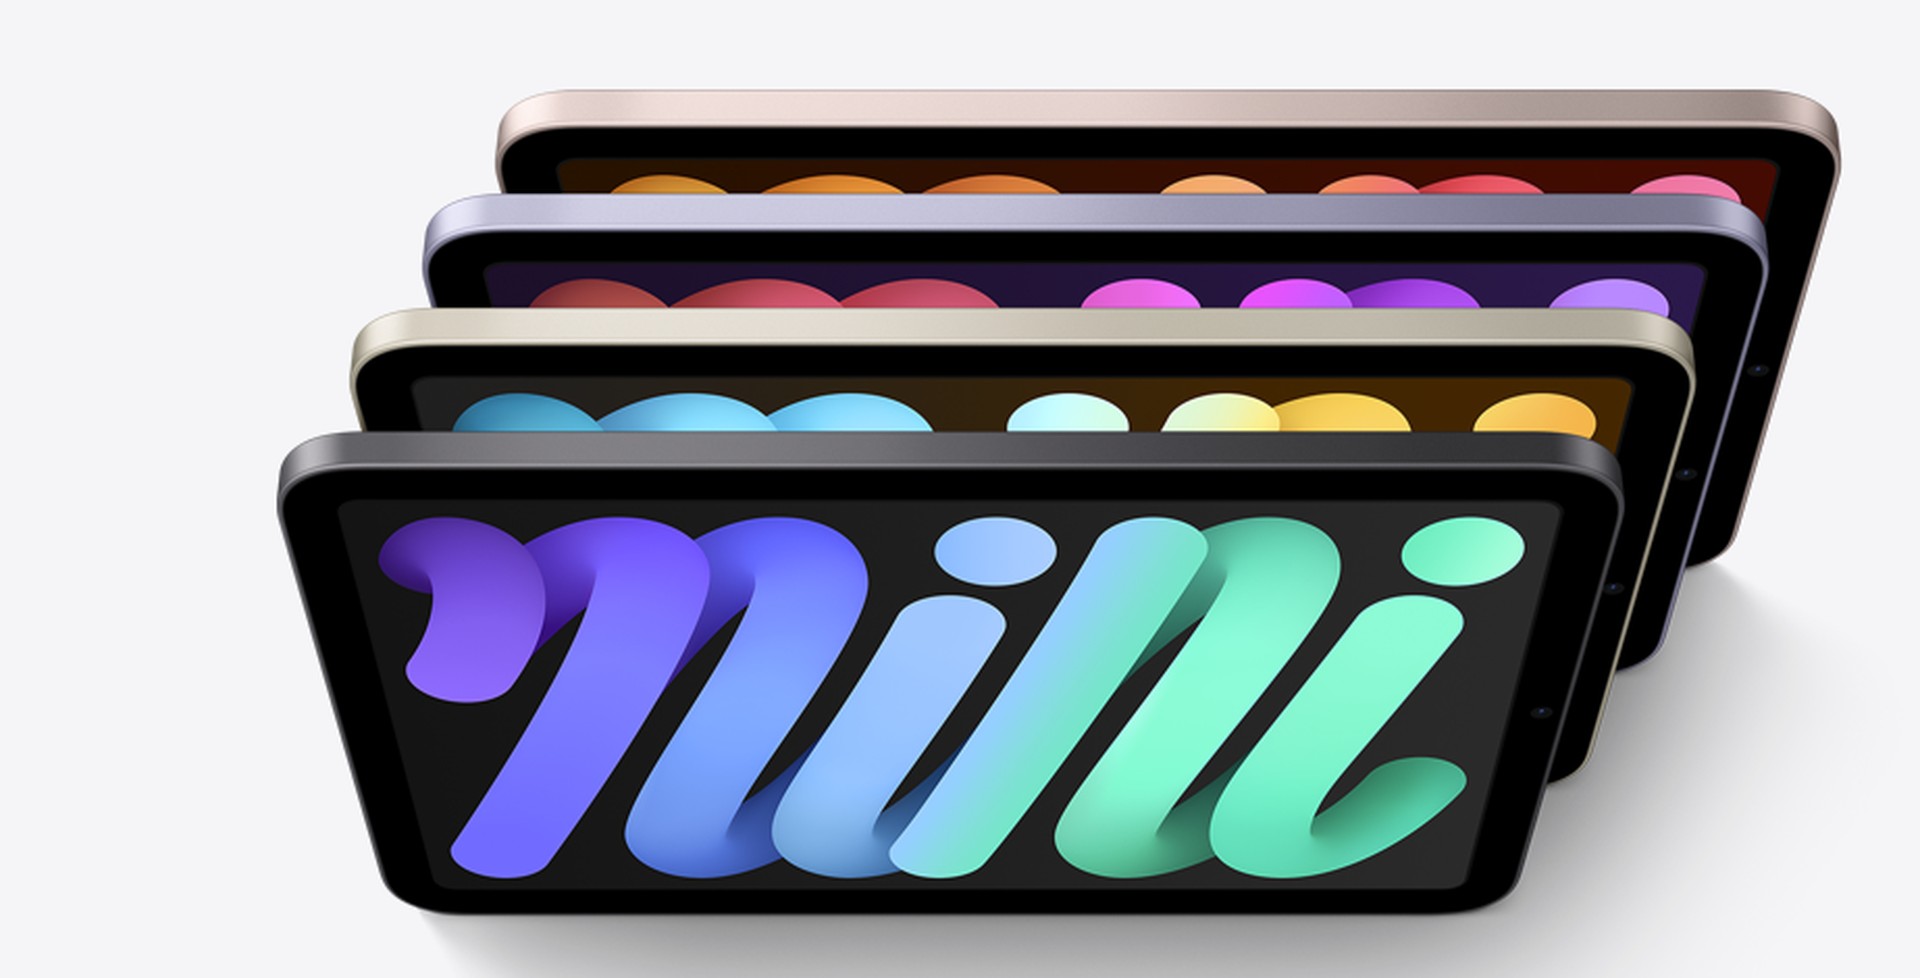 Apple iPad Mini (2021) si môžete vybrať zo 4 farebných variantov – hviezdna biela, vesmírna šedá, fialová a ružová